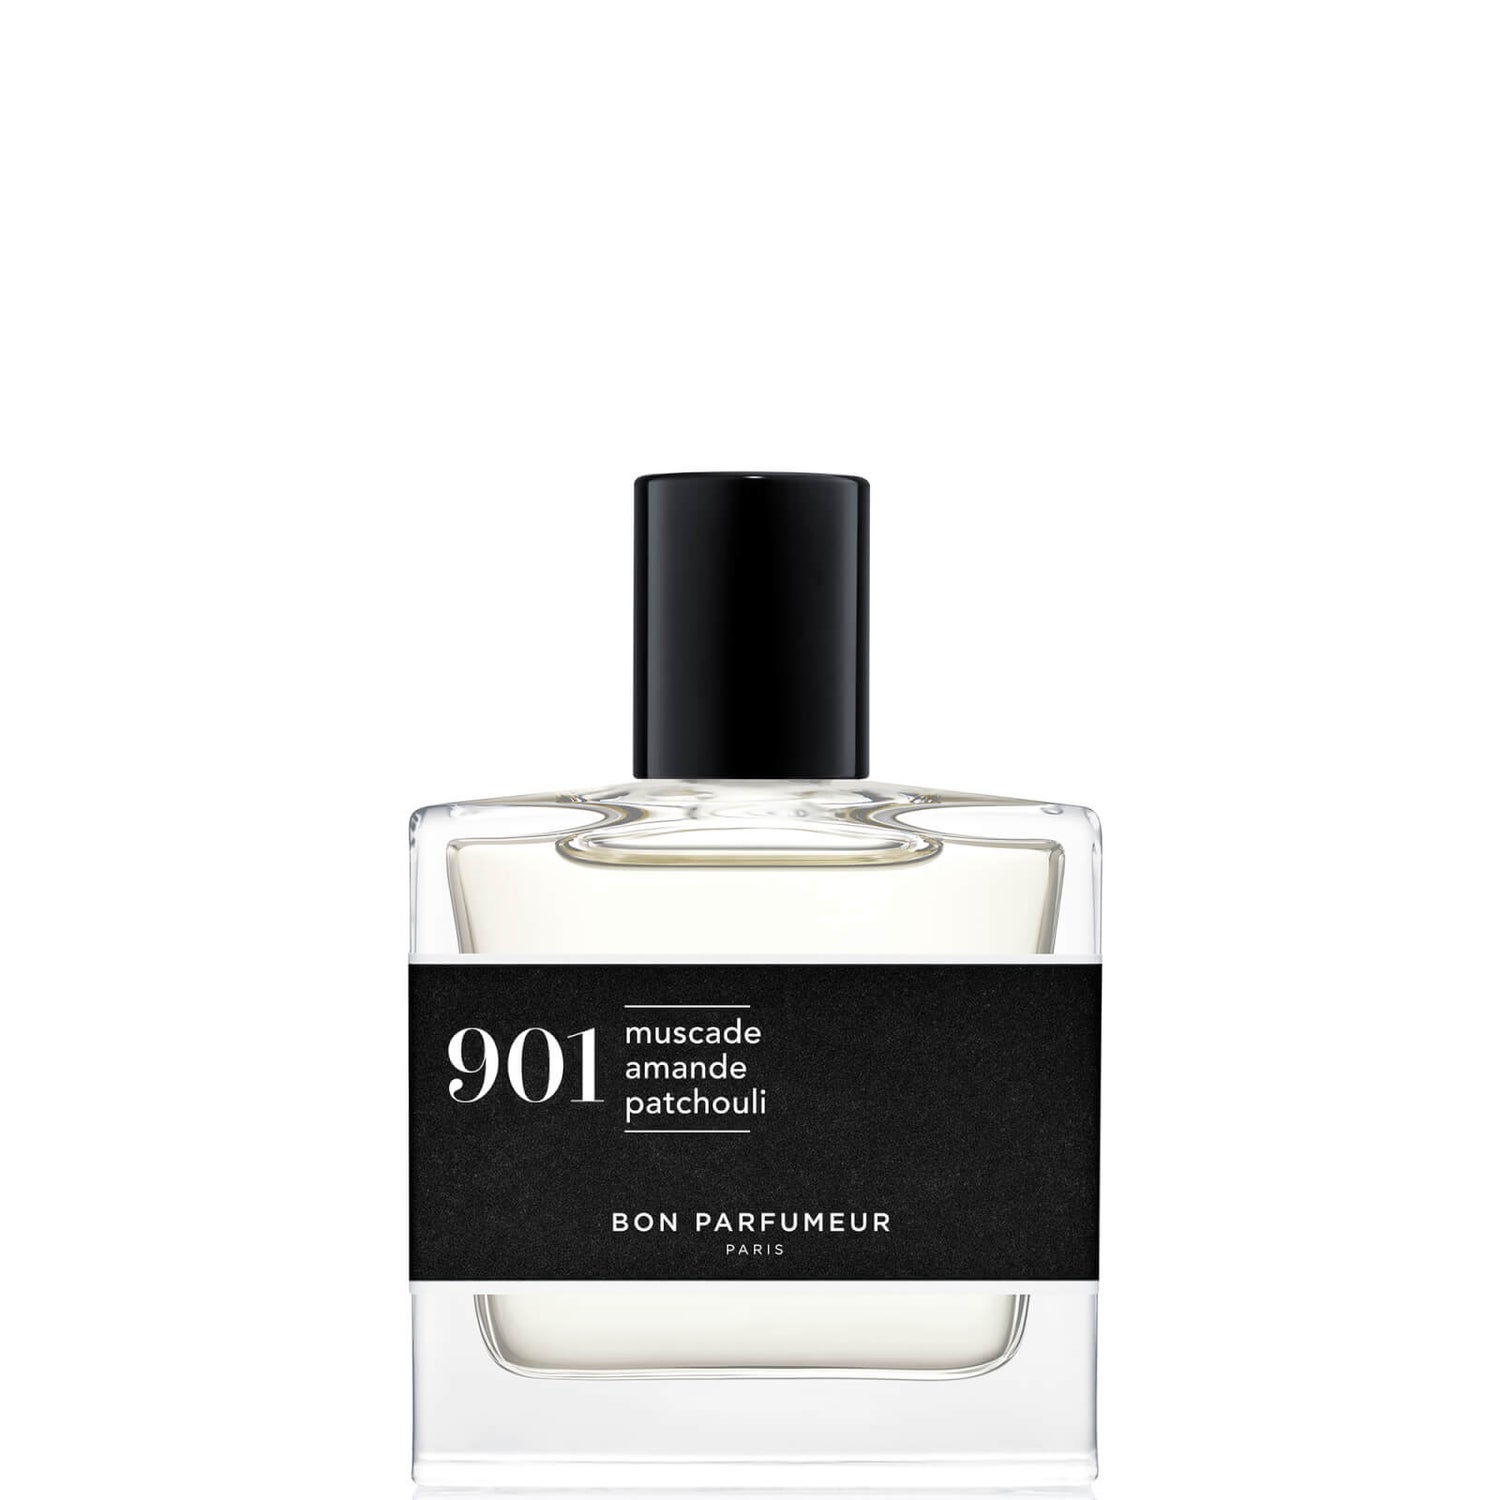 Bon Parfumeur 901 Nootmuskaat Amandel Patchouli Eau de Parfum - 30ml